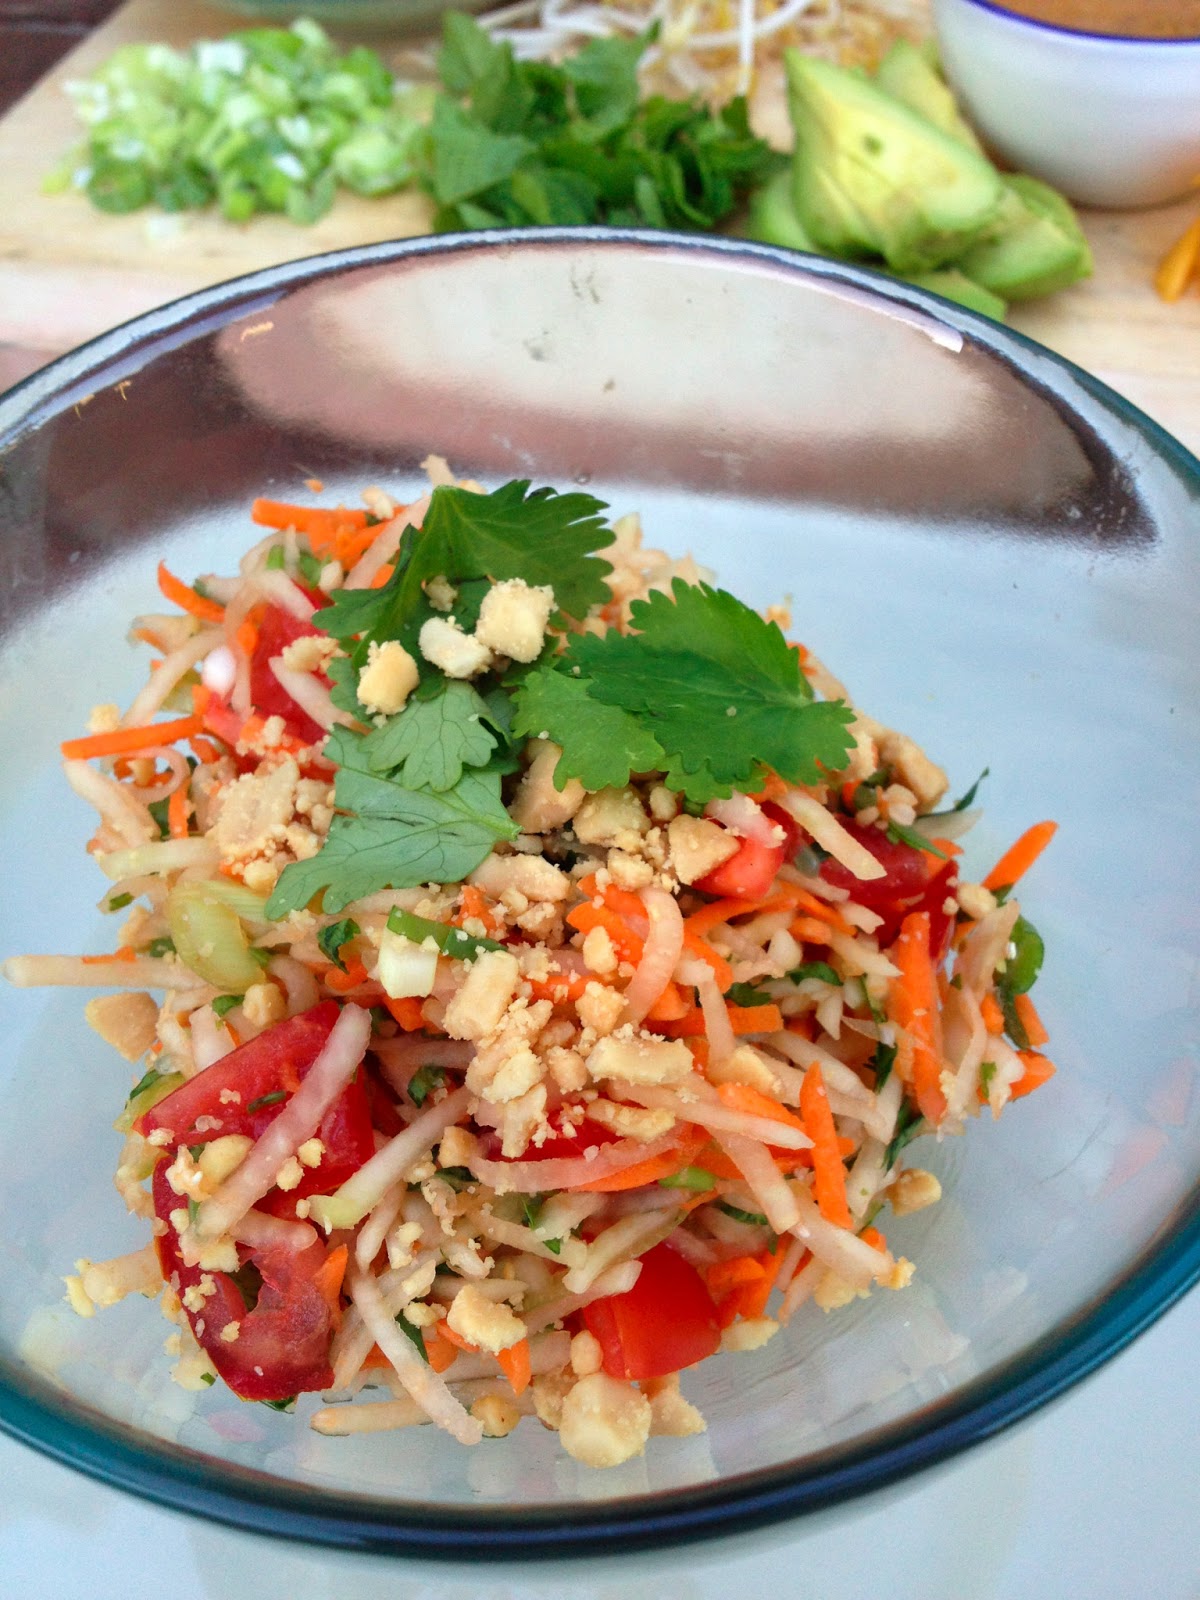 A New Hope: thai style green papaya salad